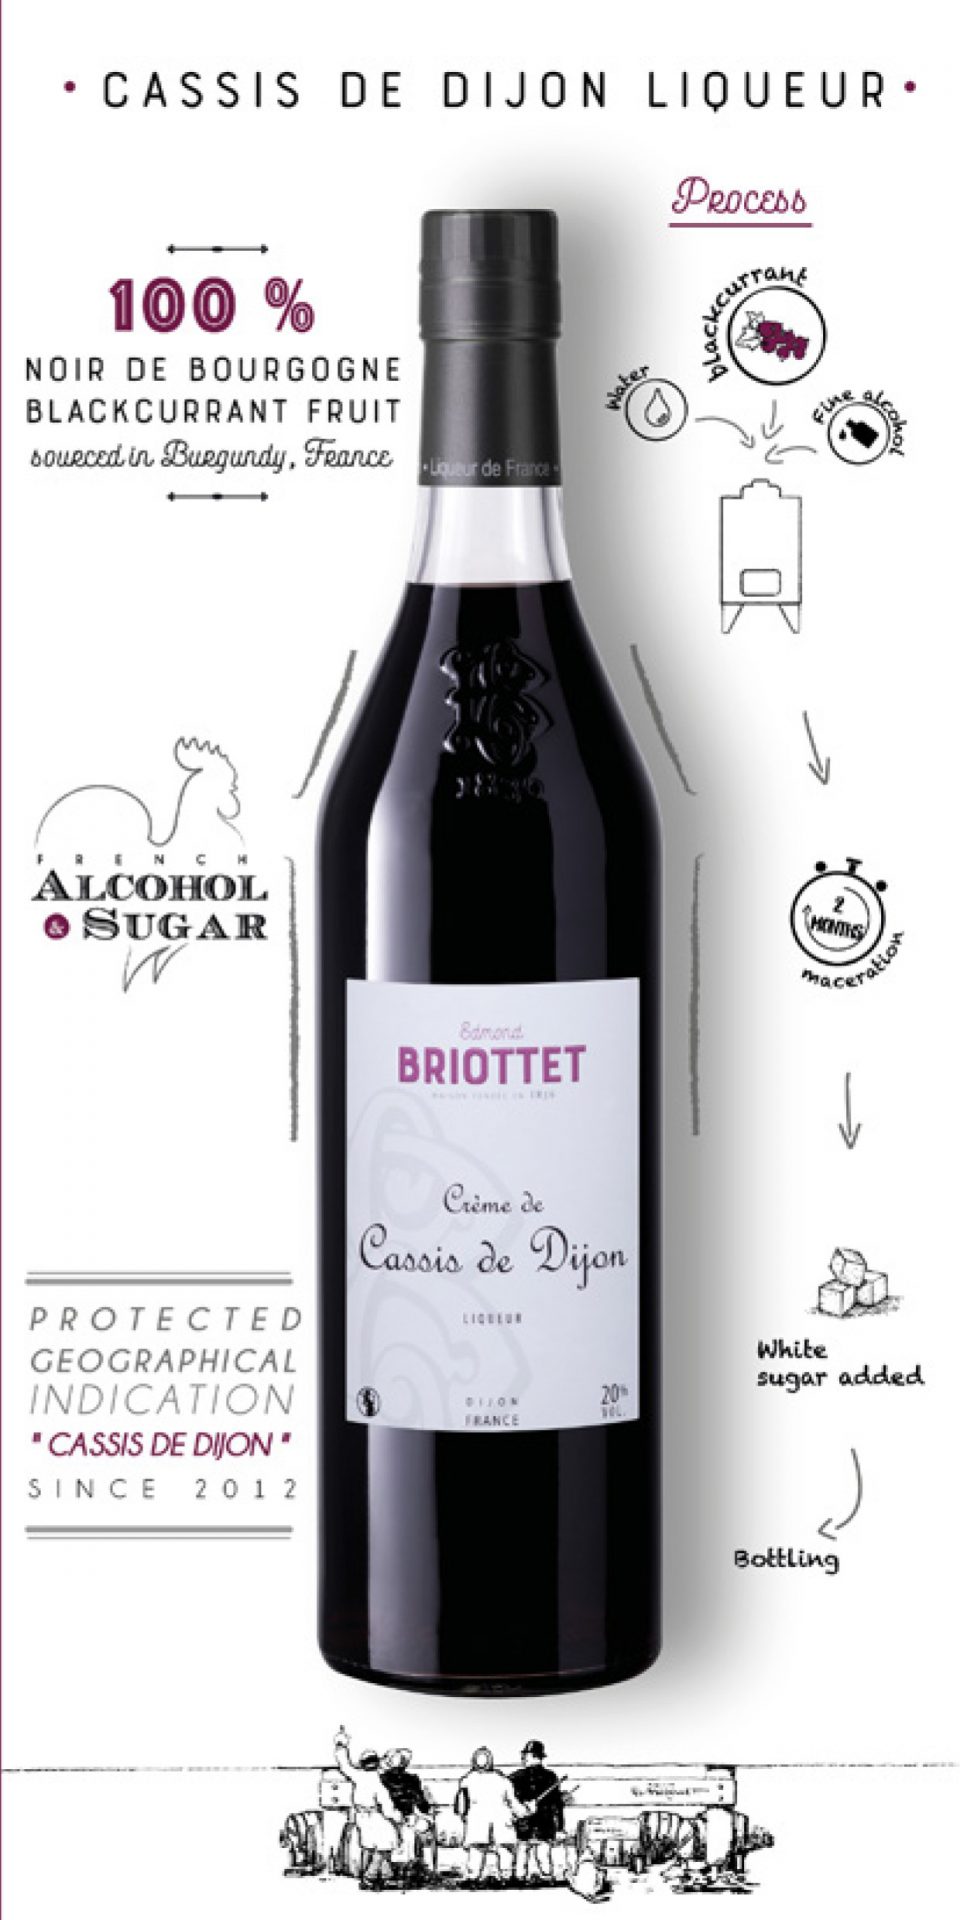 Fir tree Liqueur - Maison Briottet - Crème de Cassis de Dijon et liqueurs  haut de gamme